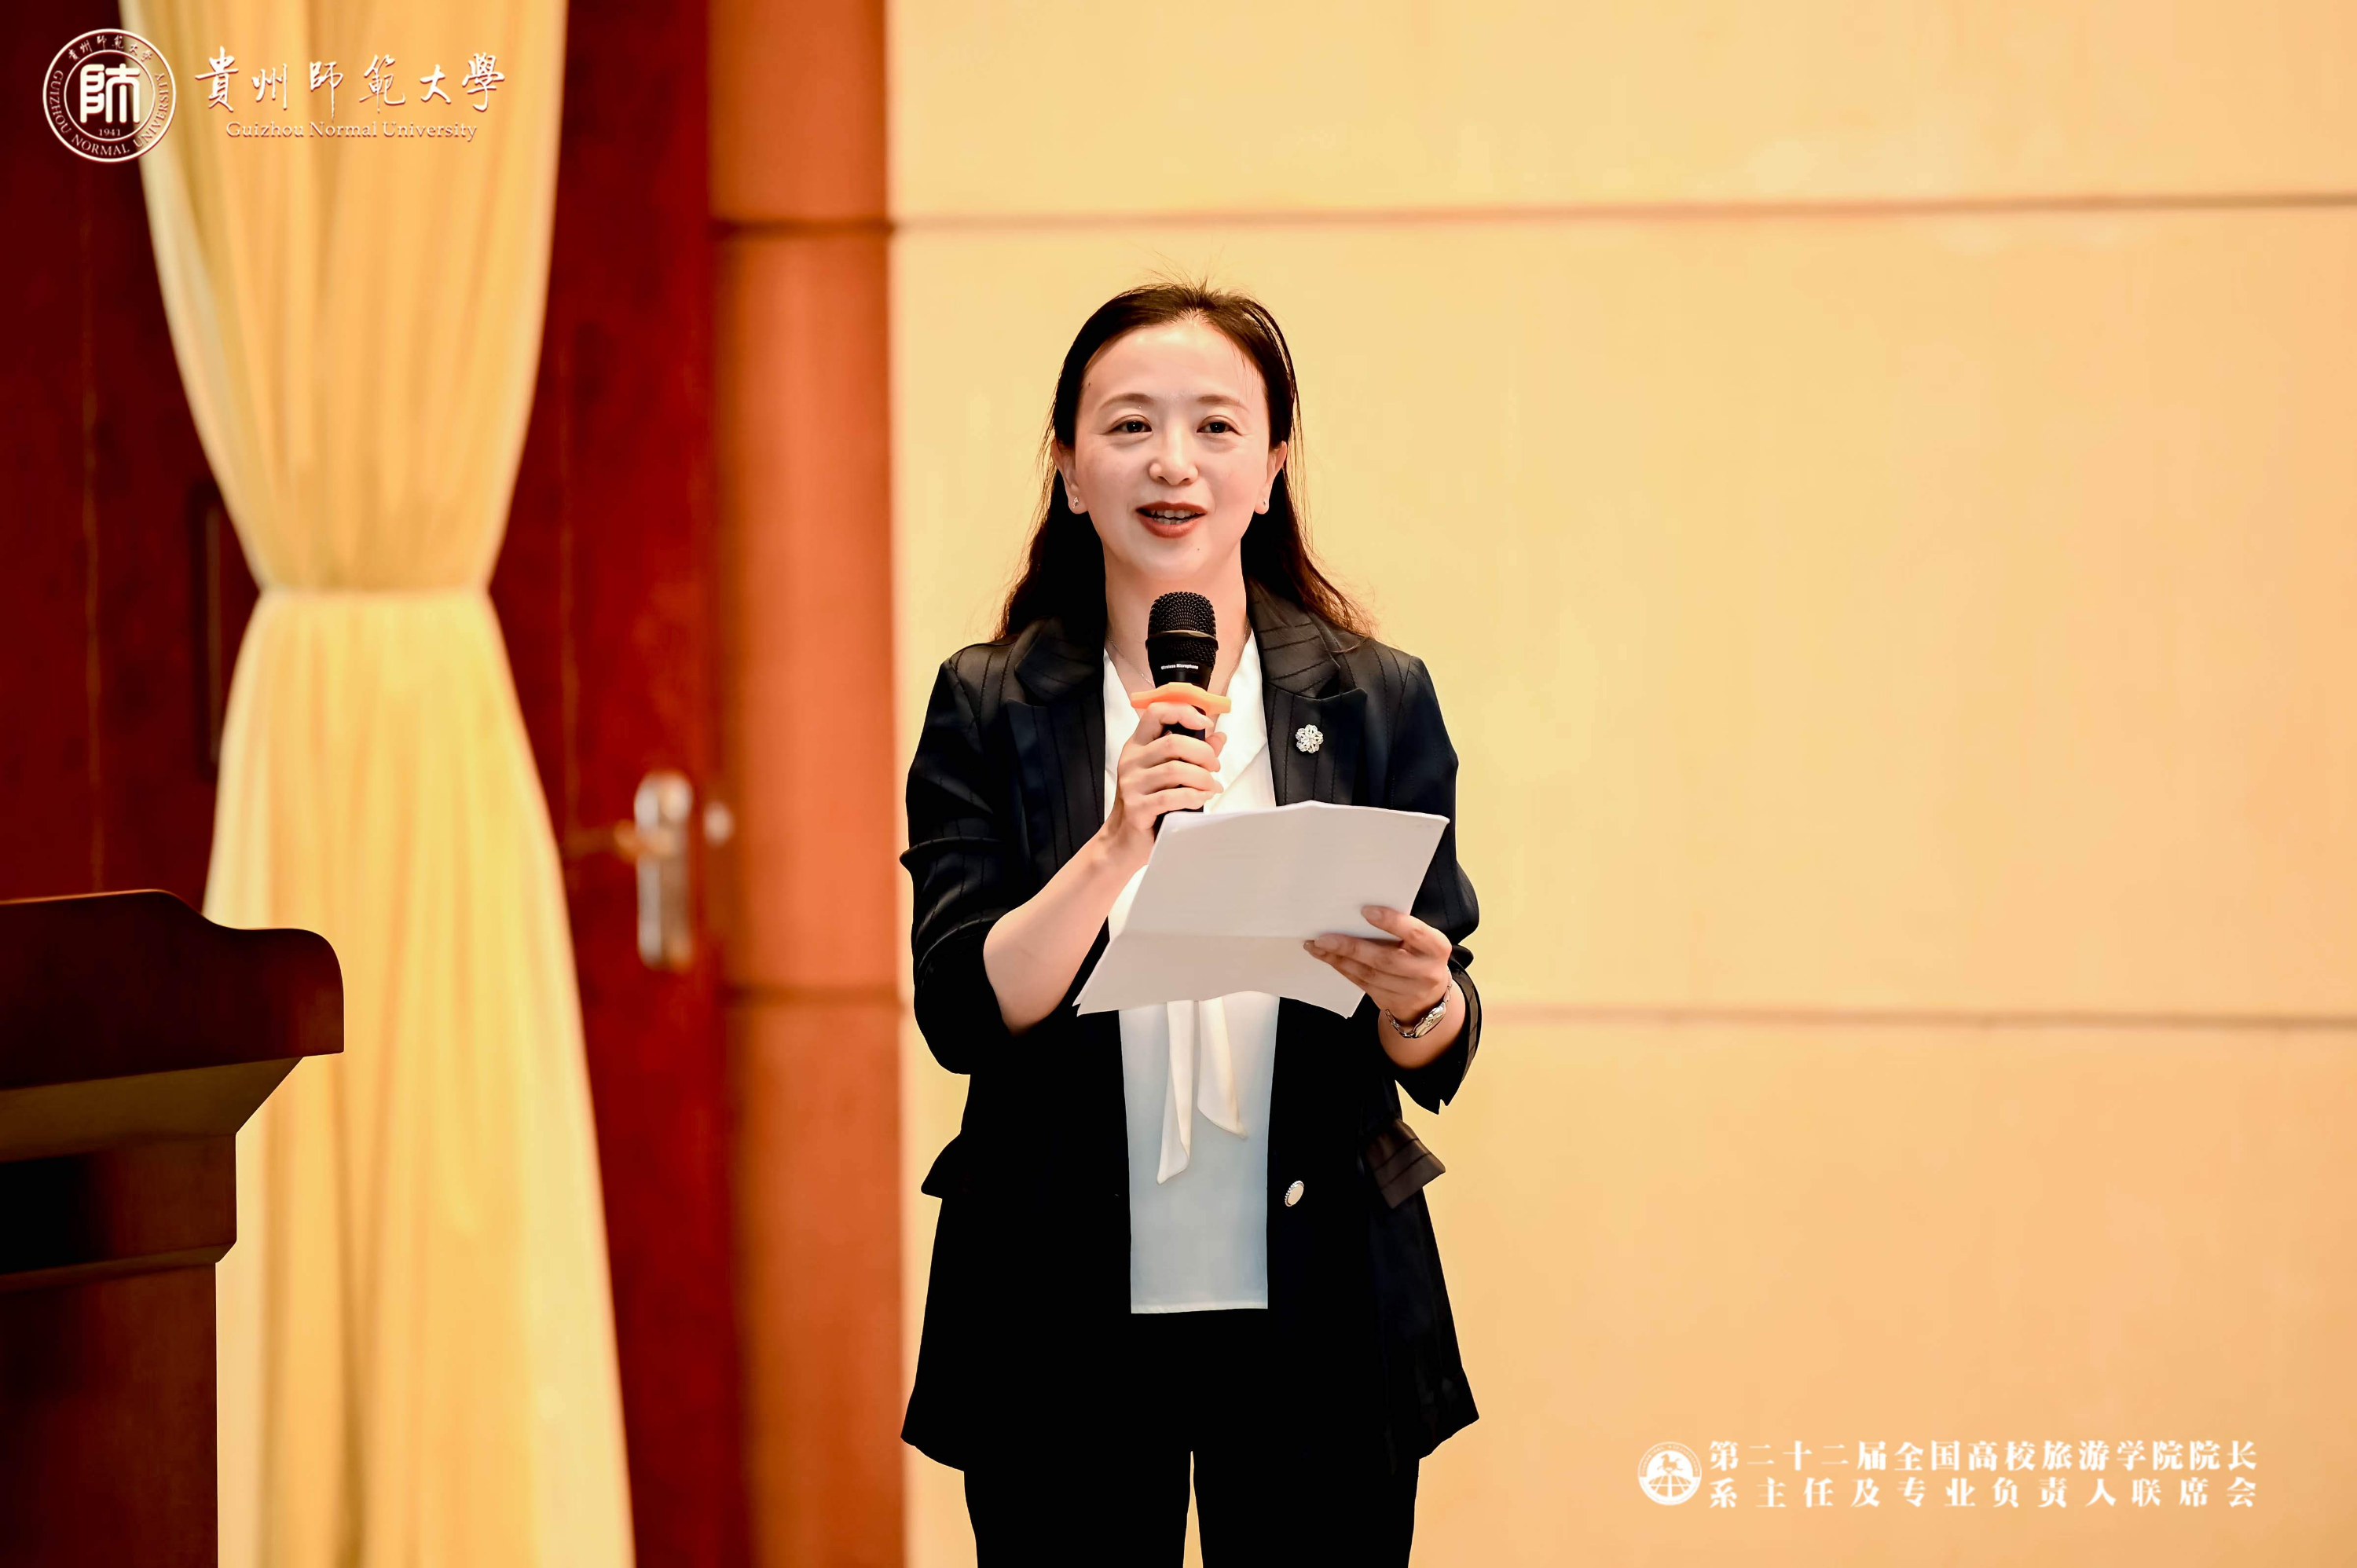 贵州师范大学国际旅游文化学院院长吴佳妮教授发表主题演讲主题演讲